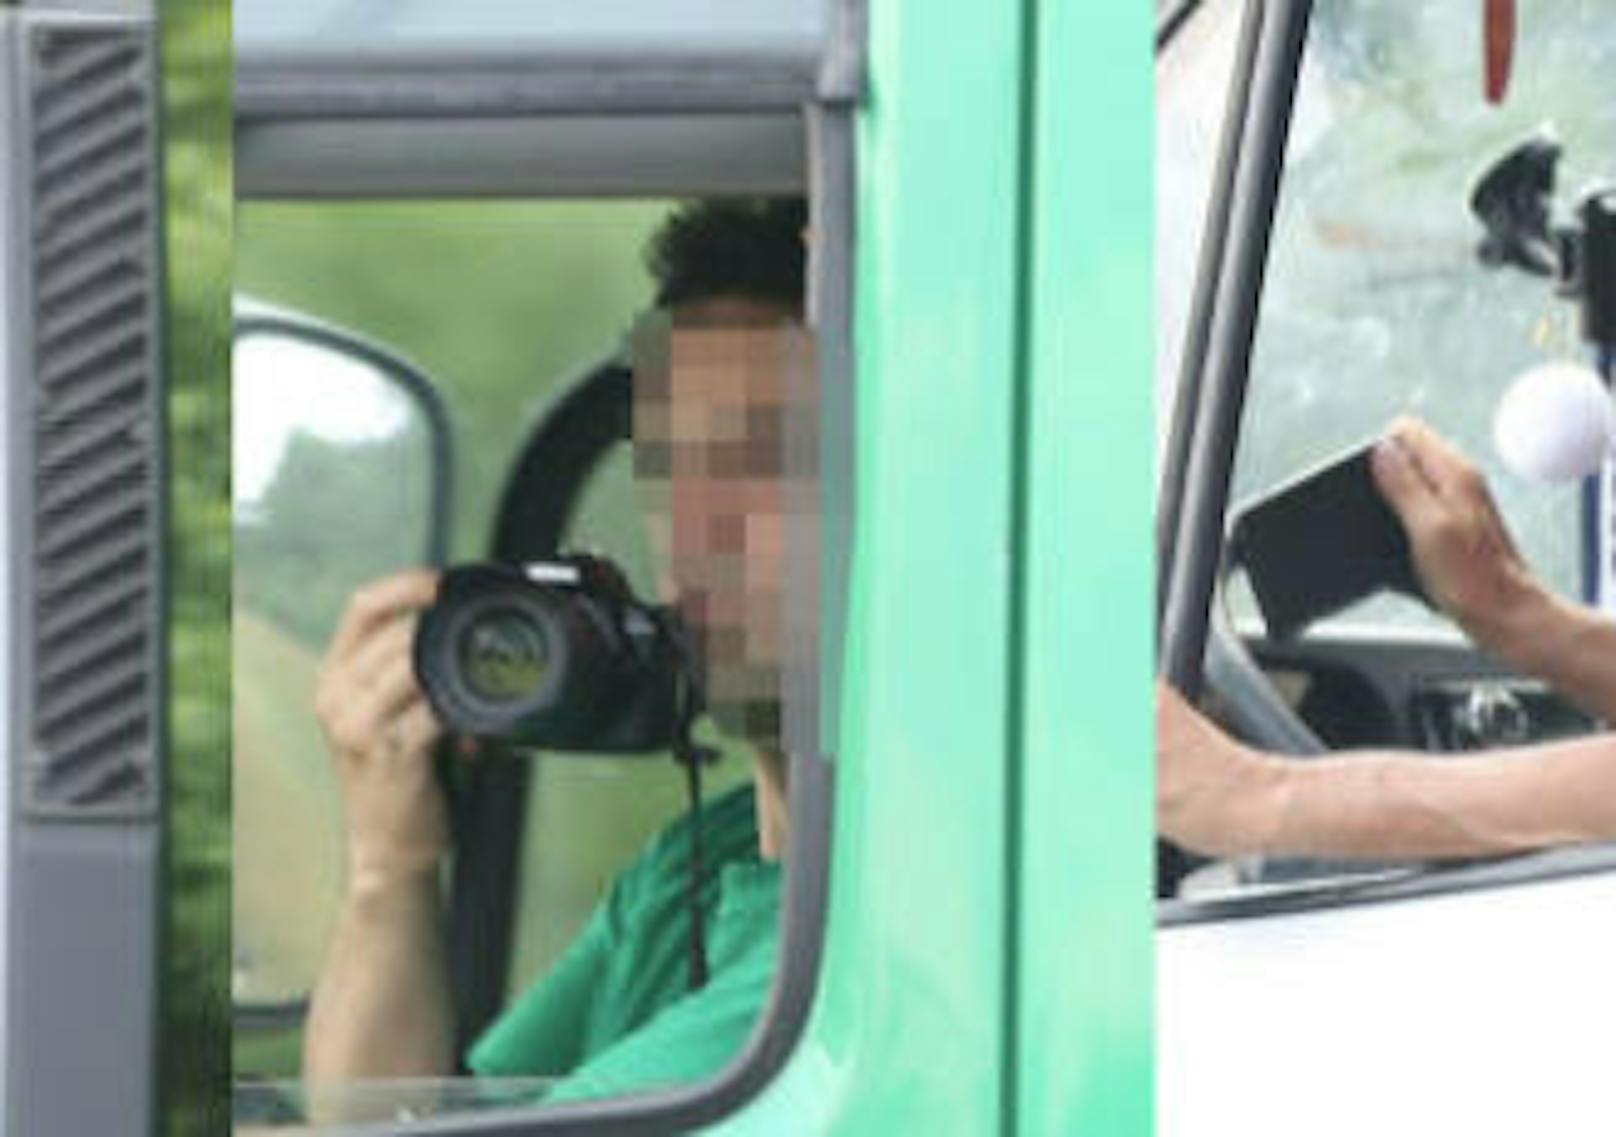 Zahlreiche Menschen filmten und fotografierten aus ihren Autos. Damit behinderten sie die Arbeit der Einsatzkräfte.